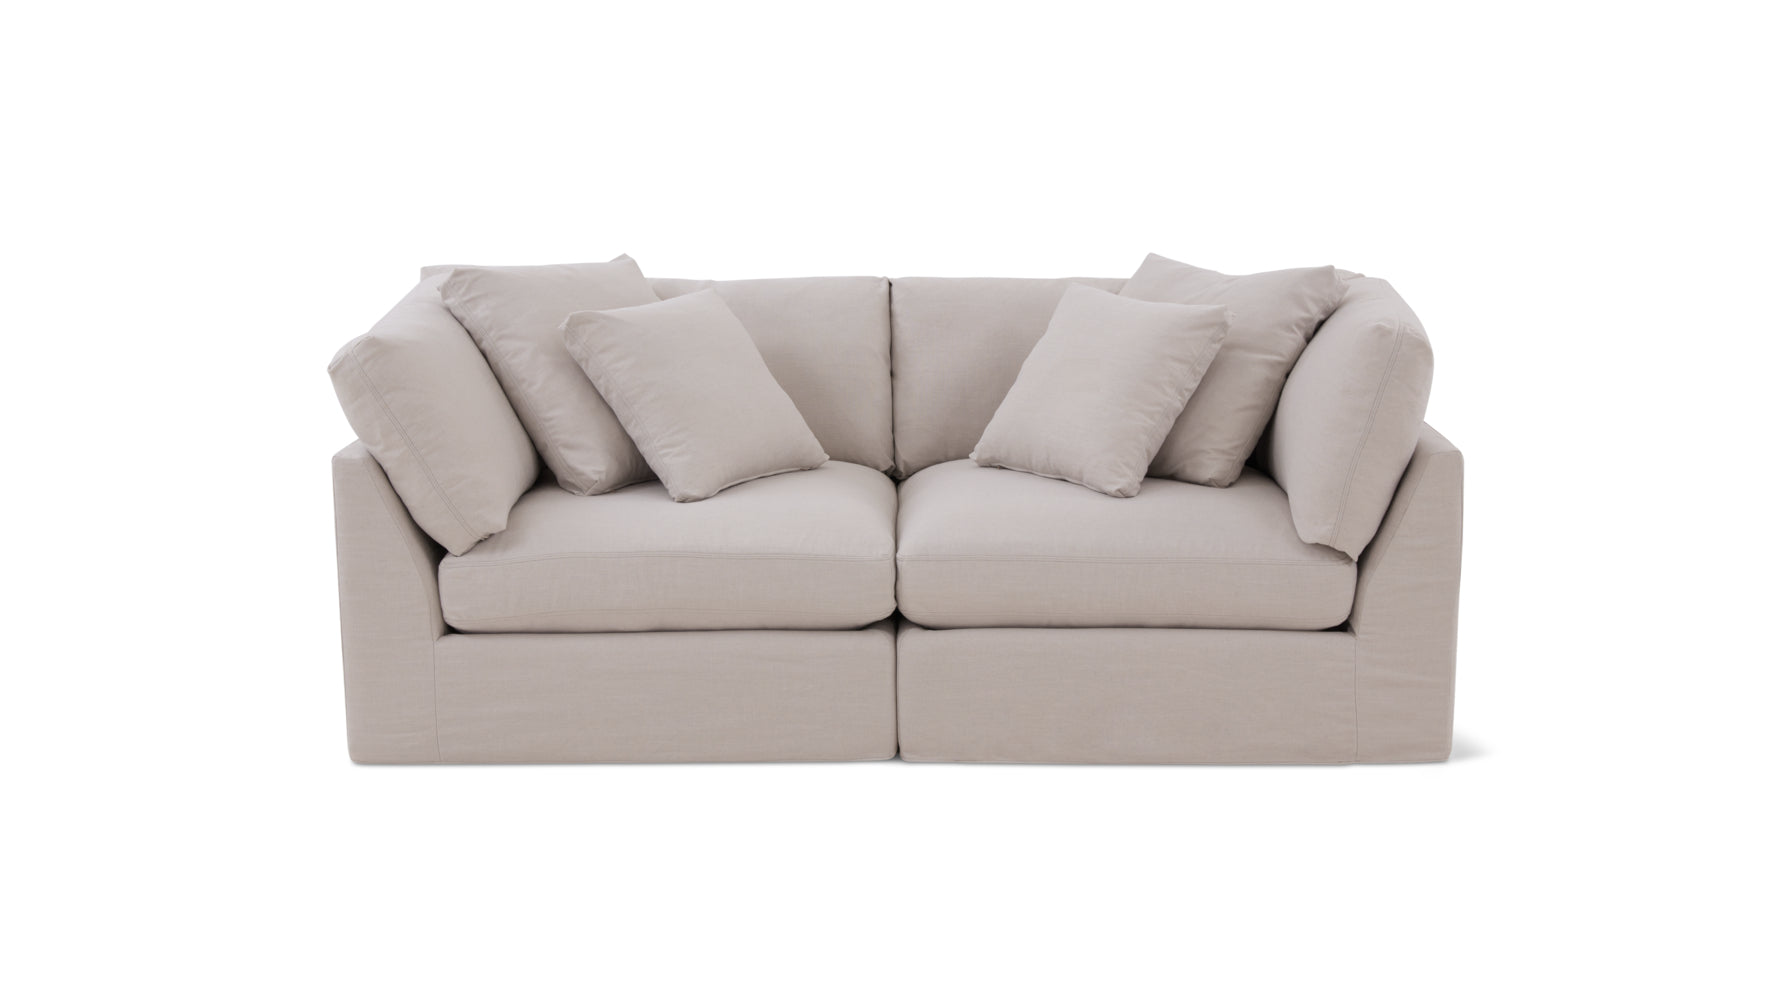 Get Together™ 2 Piece Modular Sofa, Large, Clay - Image 1